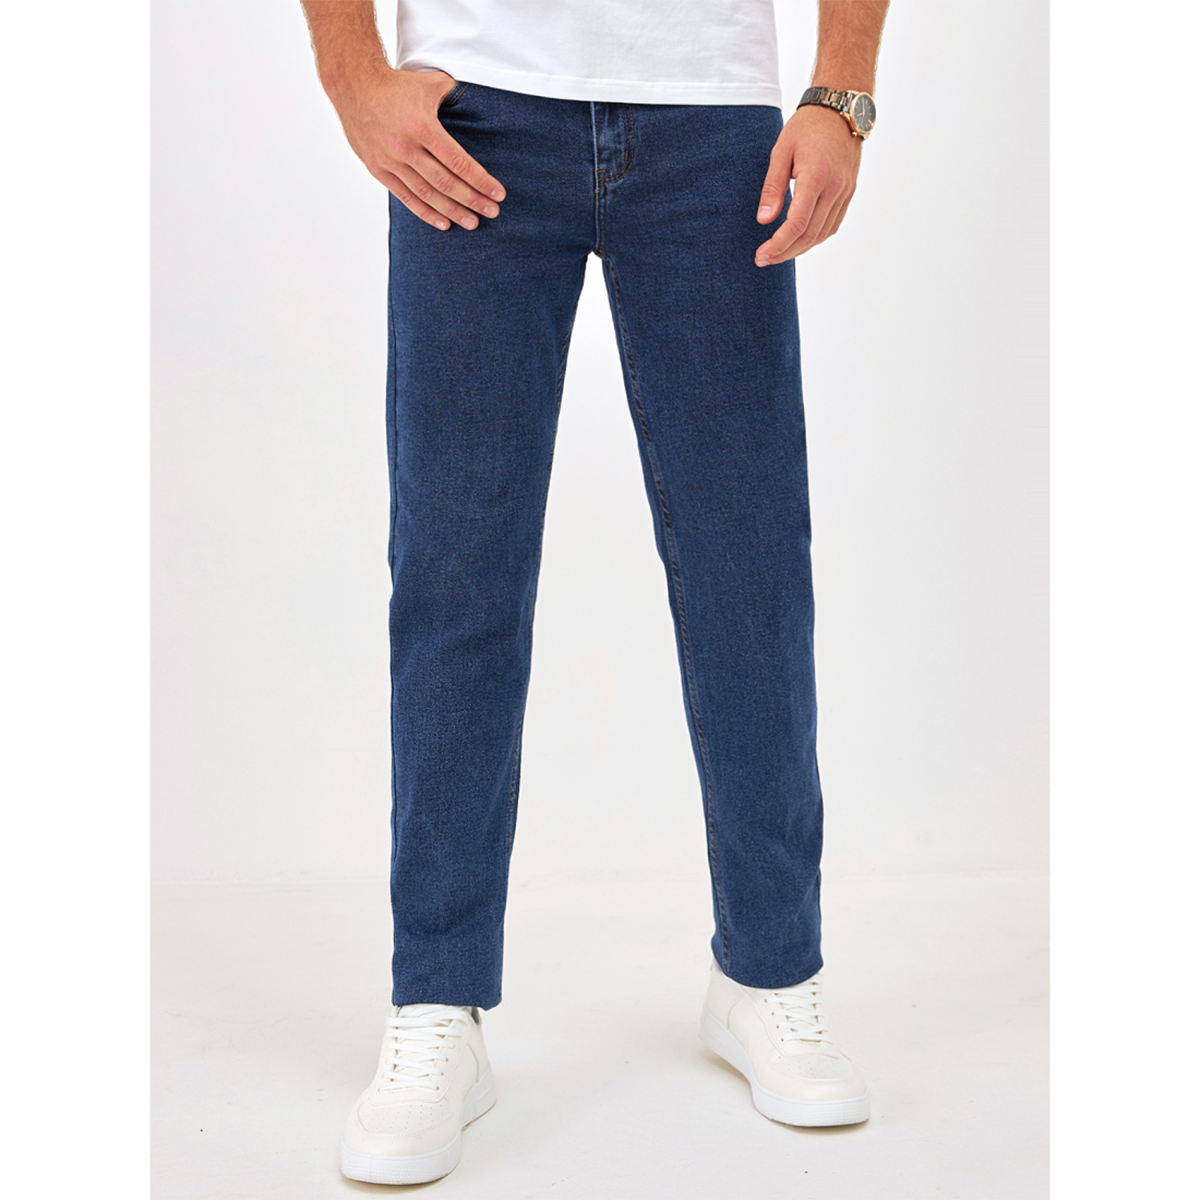 Джинсы мужские Barouz Jeans classic синие 28